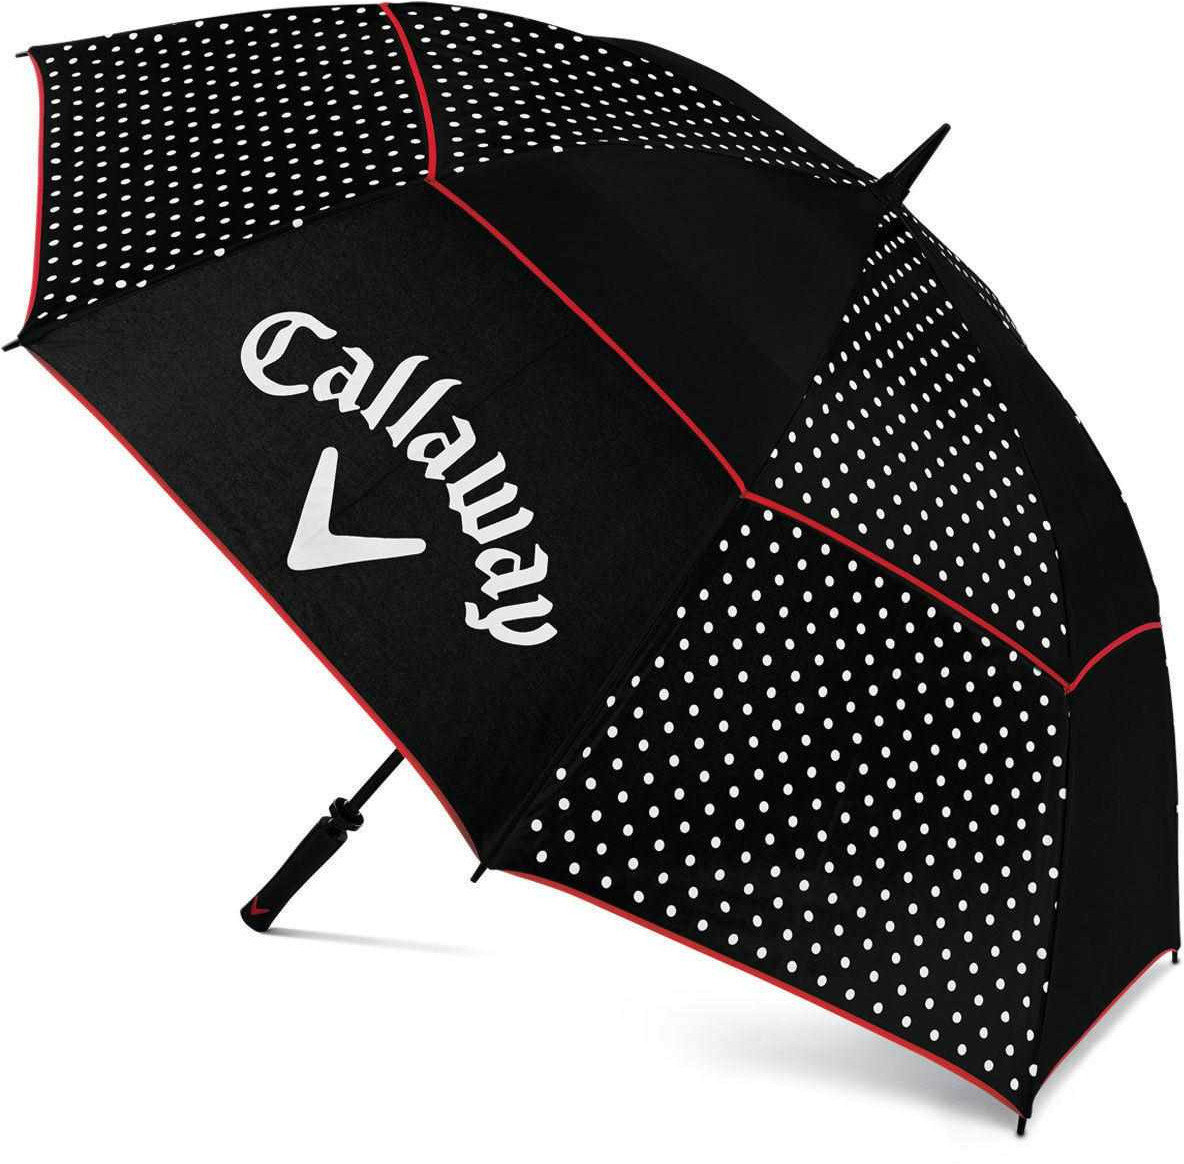 Parasol Callaway Umbrella Blk/Wht